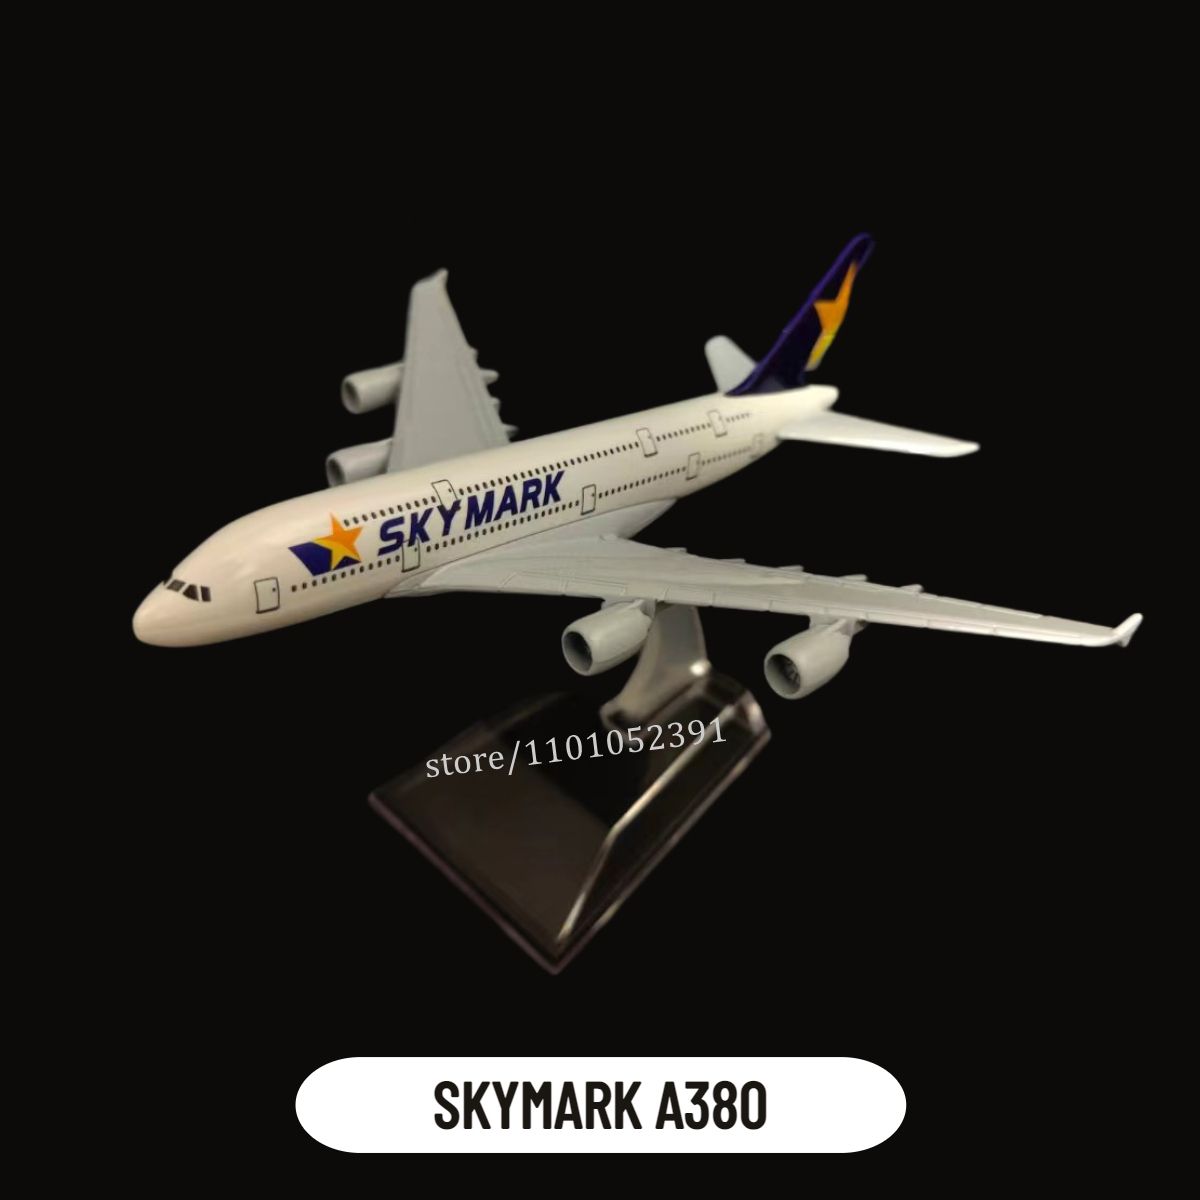 20.스카이마크 A380